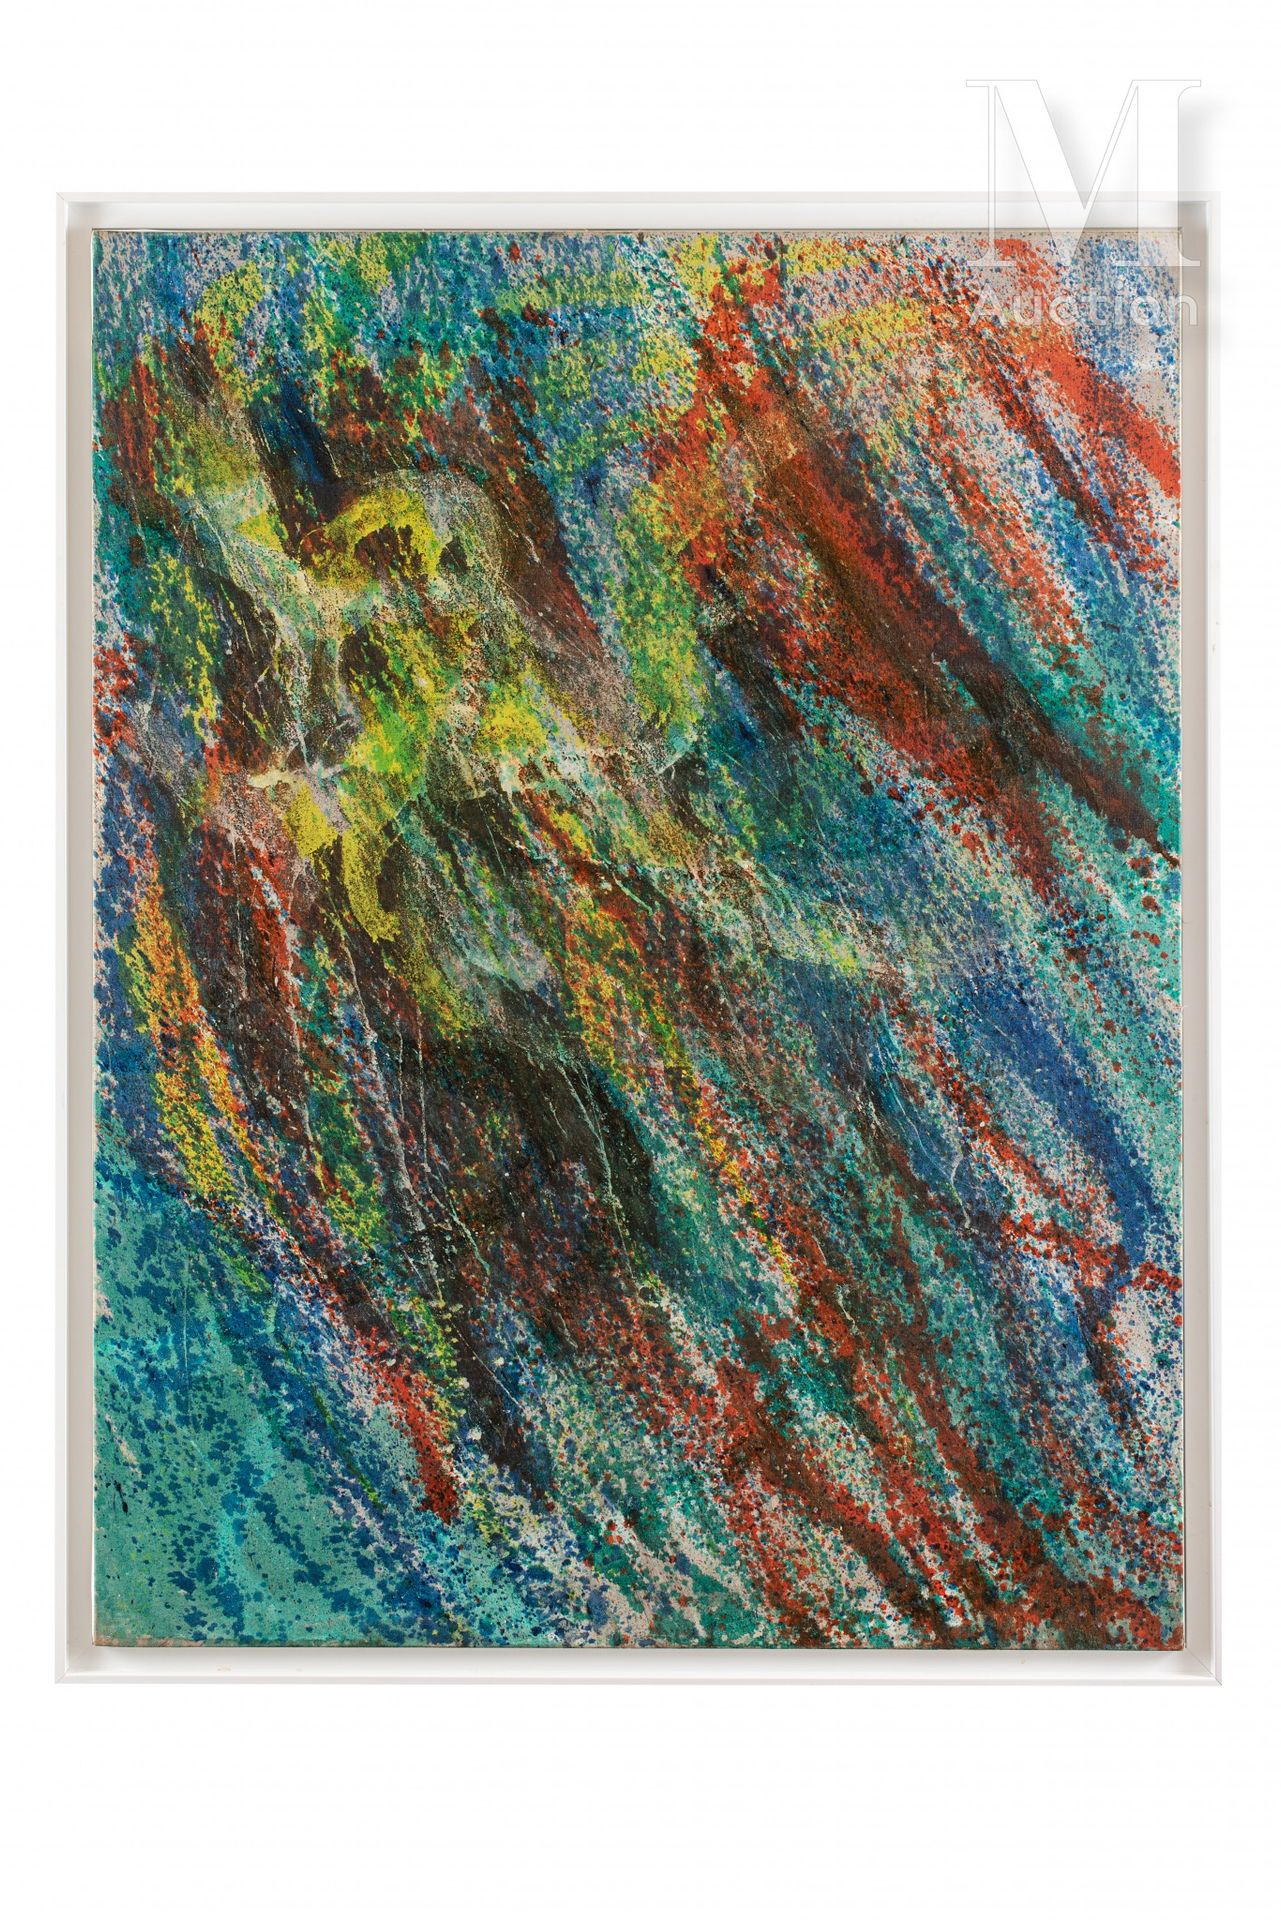 Stanley William HAYTER (1901-1988) The Octopus, 1963

Oil on canvas

116 x 89 cm&hellip;